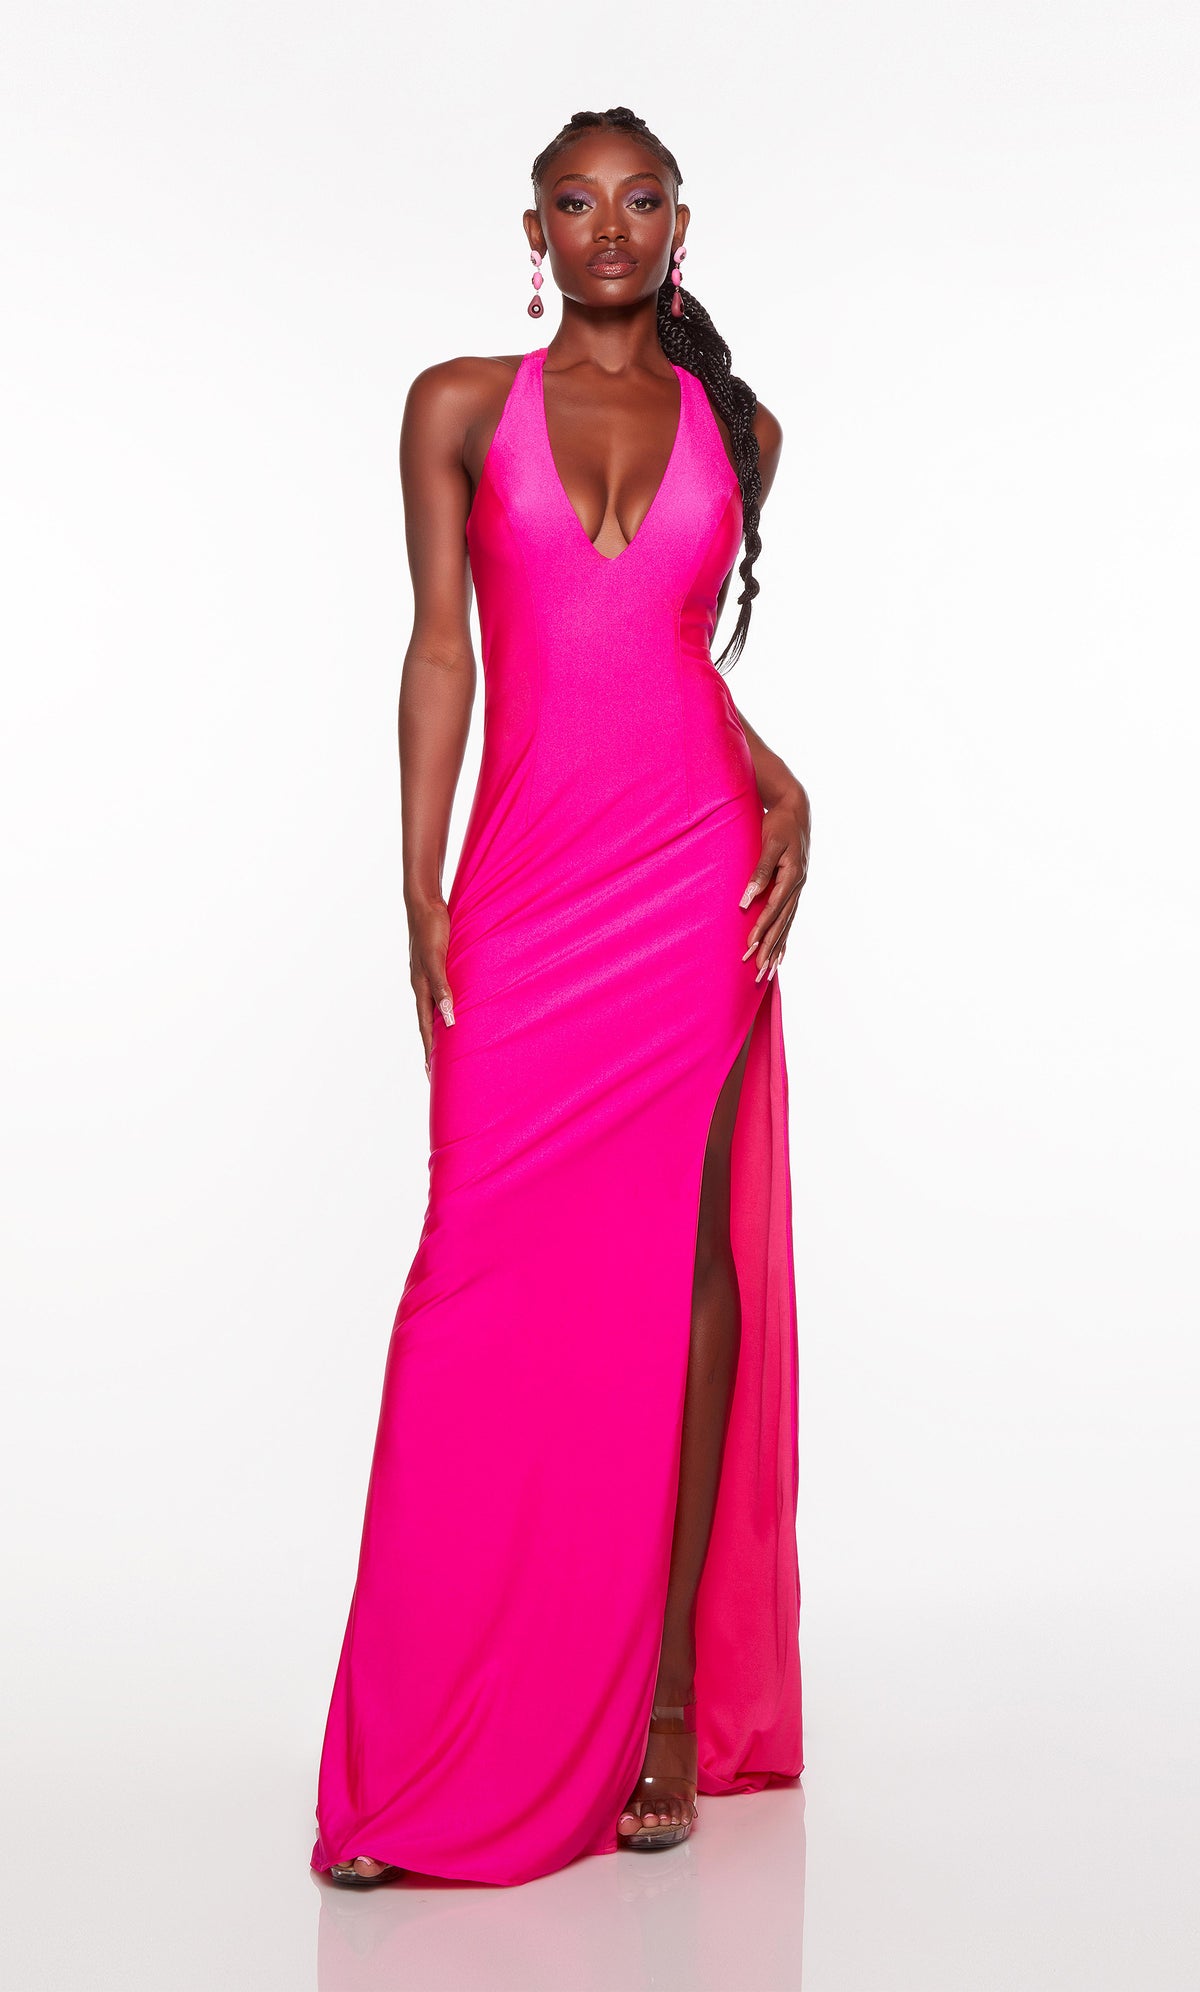 Hot pink formal gown with deep V neckline and side slit.